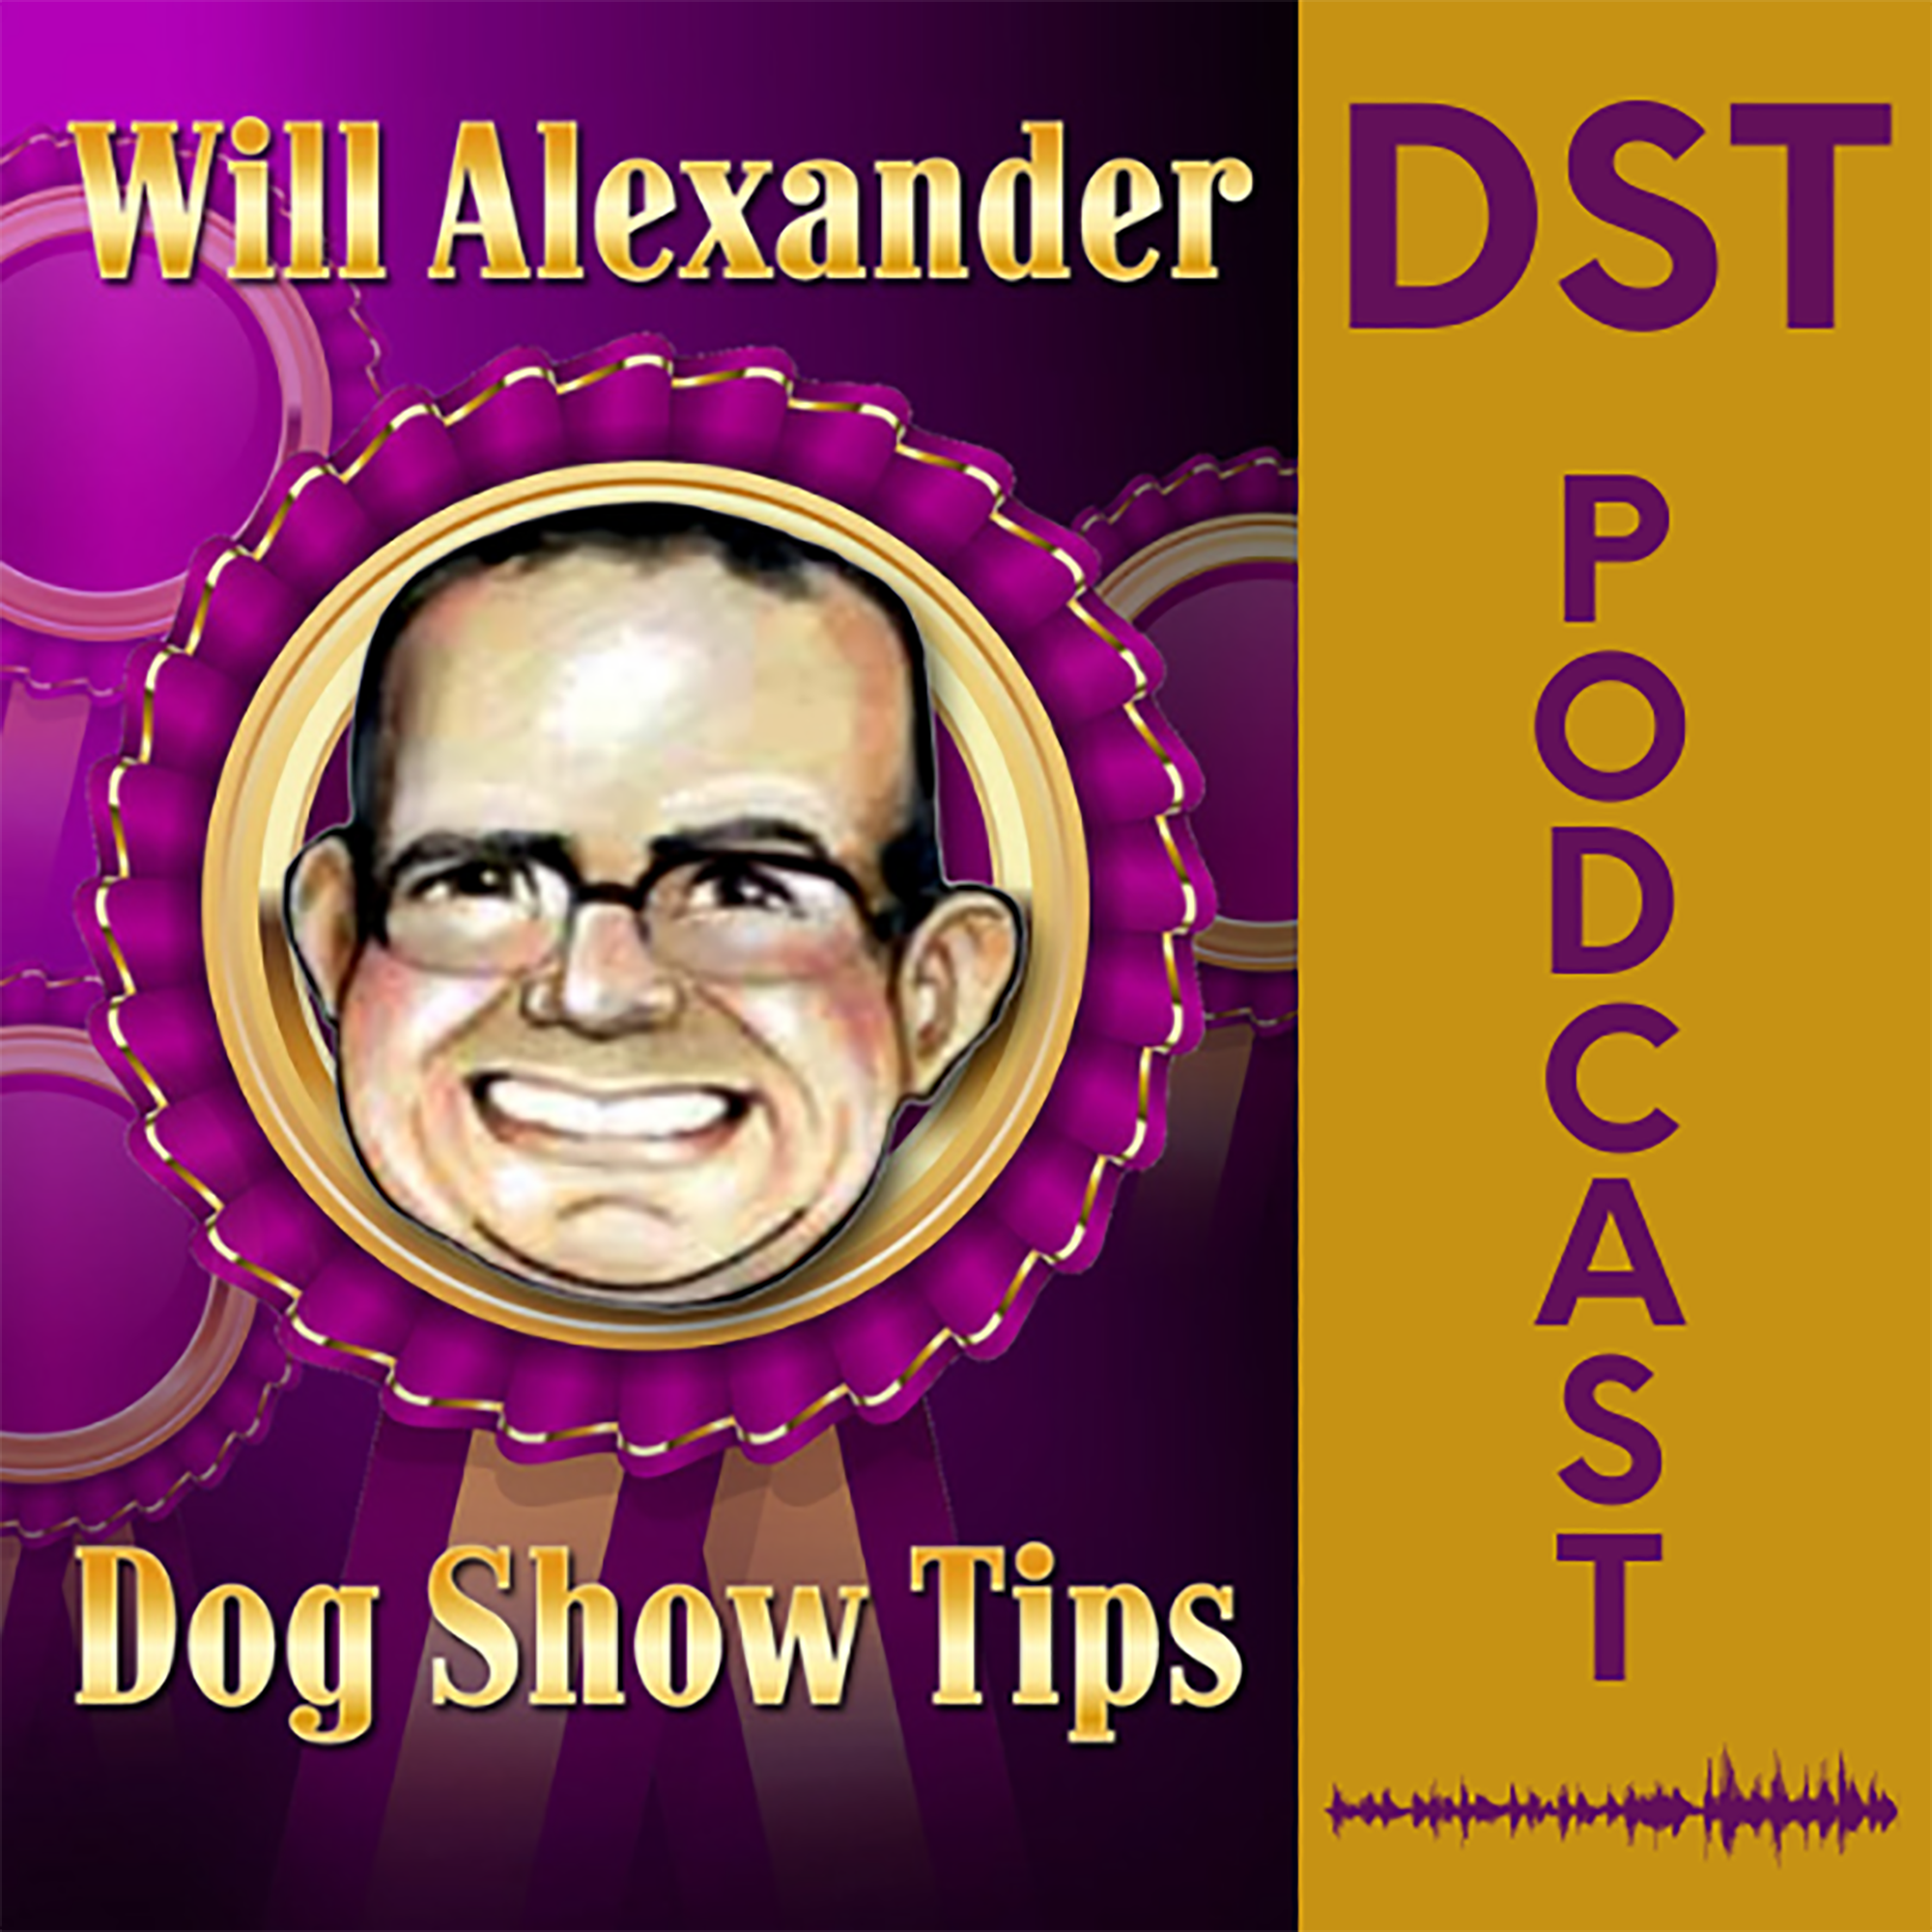 Will Alexander, Dog Show Tips, DST, Pattie Proctor